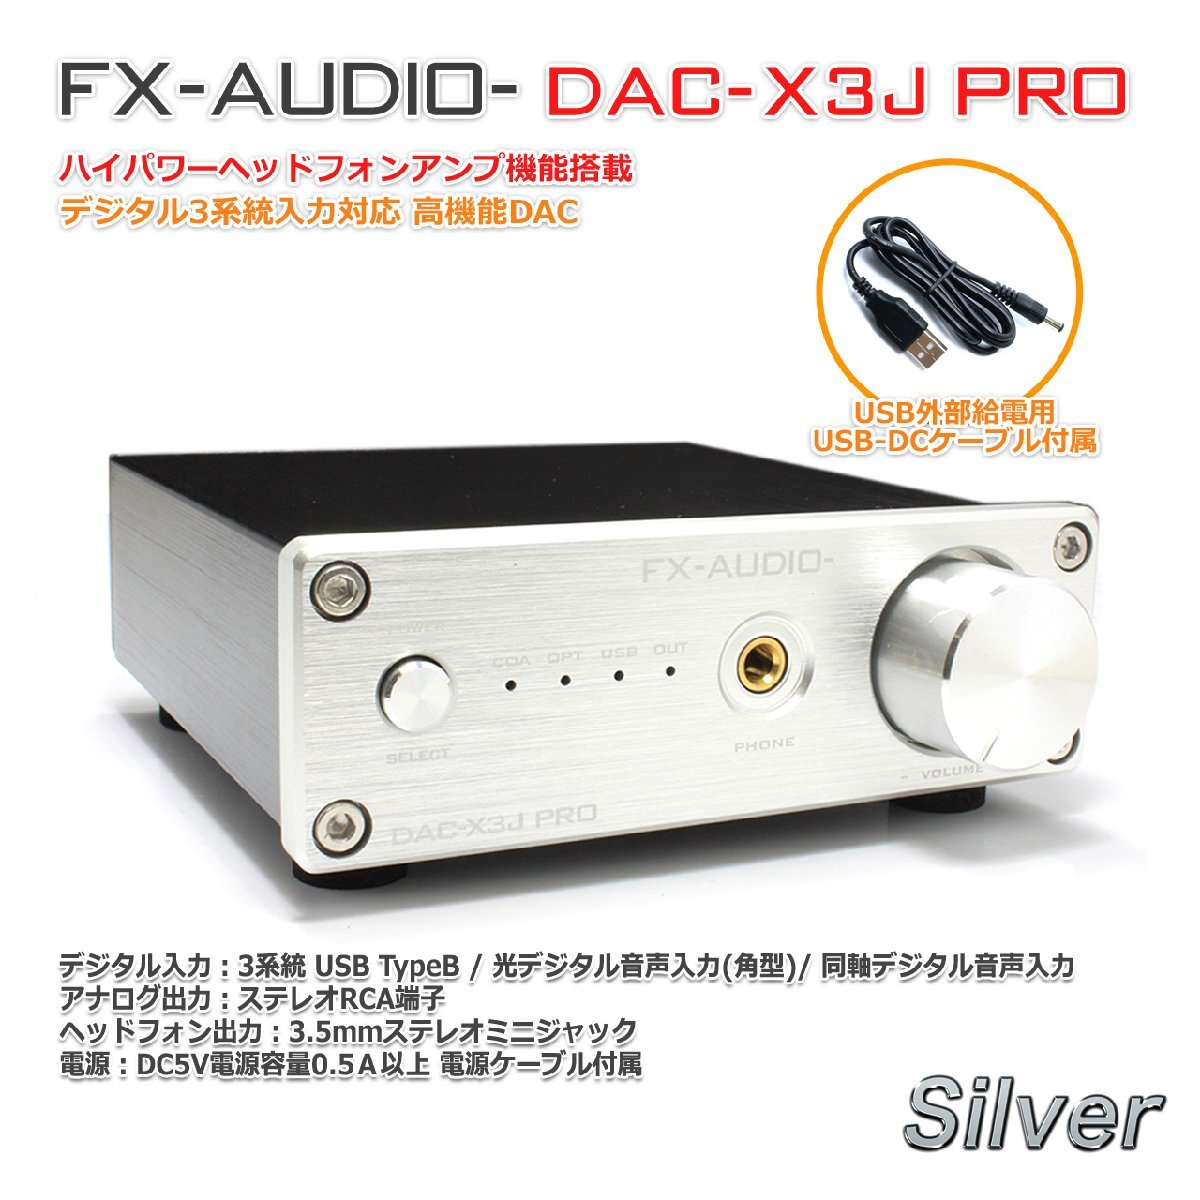 FX-AUDIO- DAC-X3J PRO[シルバー]ハイレゾDAC ES9023P USBバスパワー駆動 ハイパワーヘッドフォンアンプ 光デジタル 同軸デジタル 3系統入_画像1